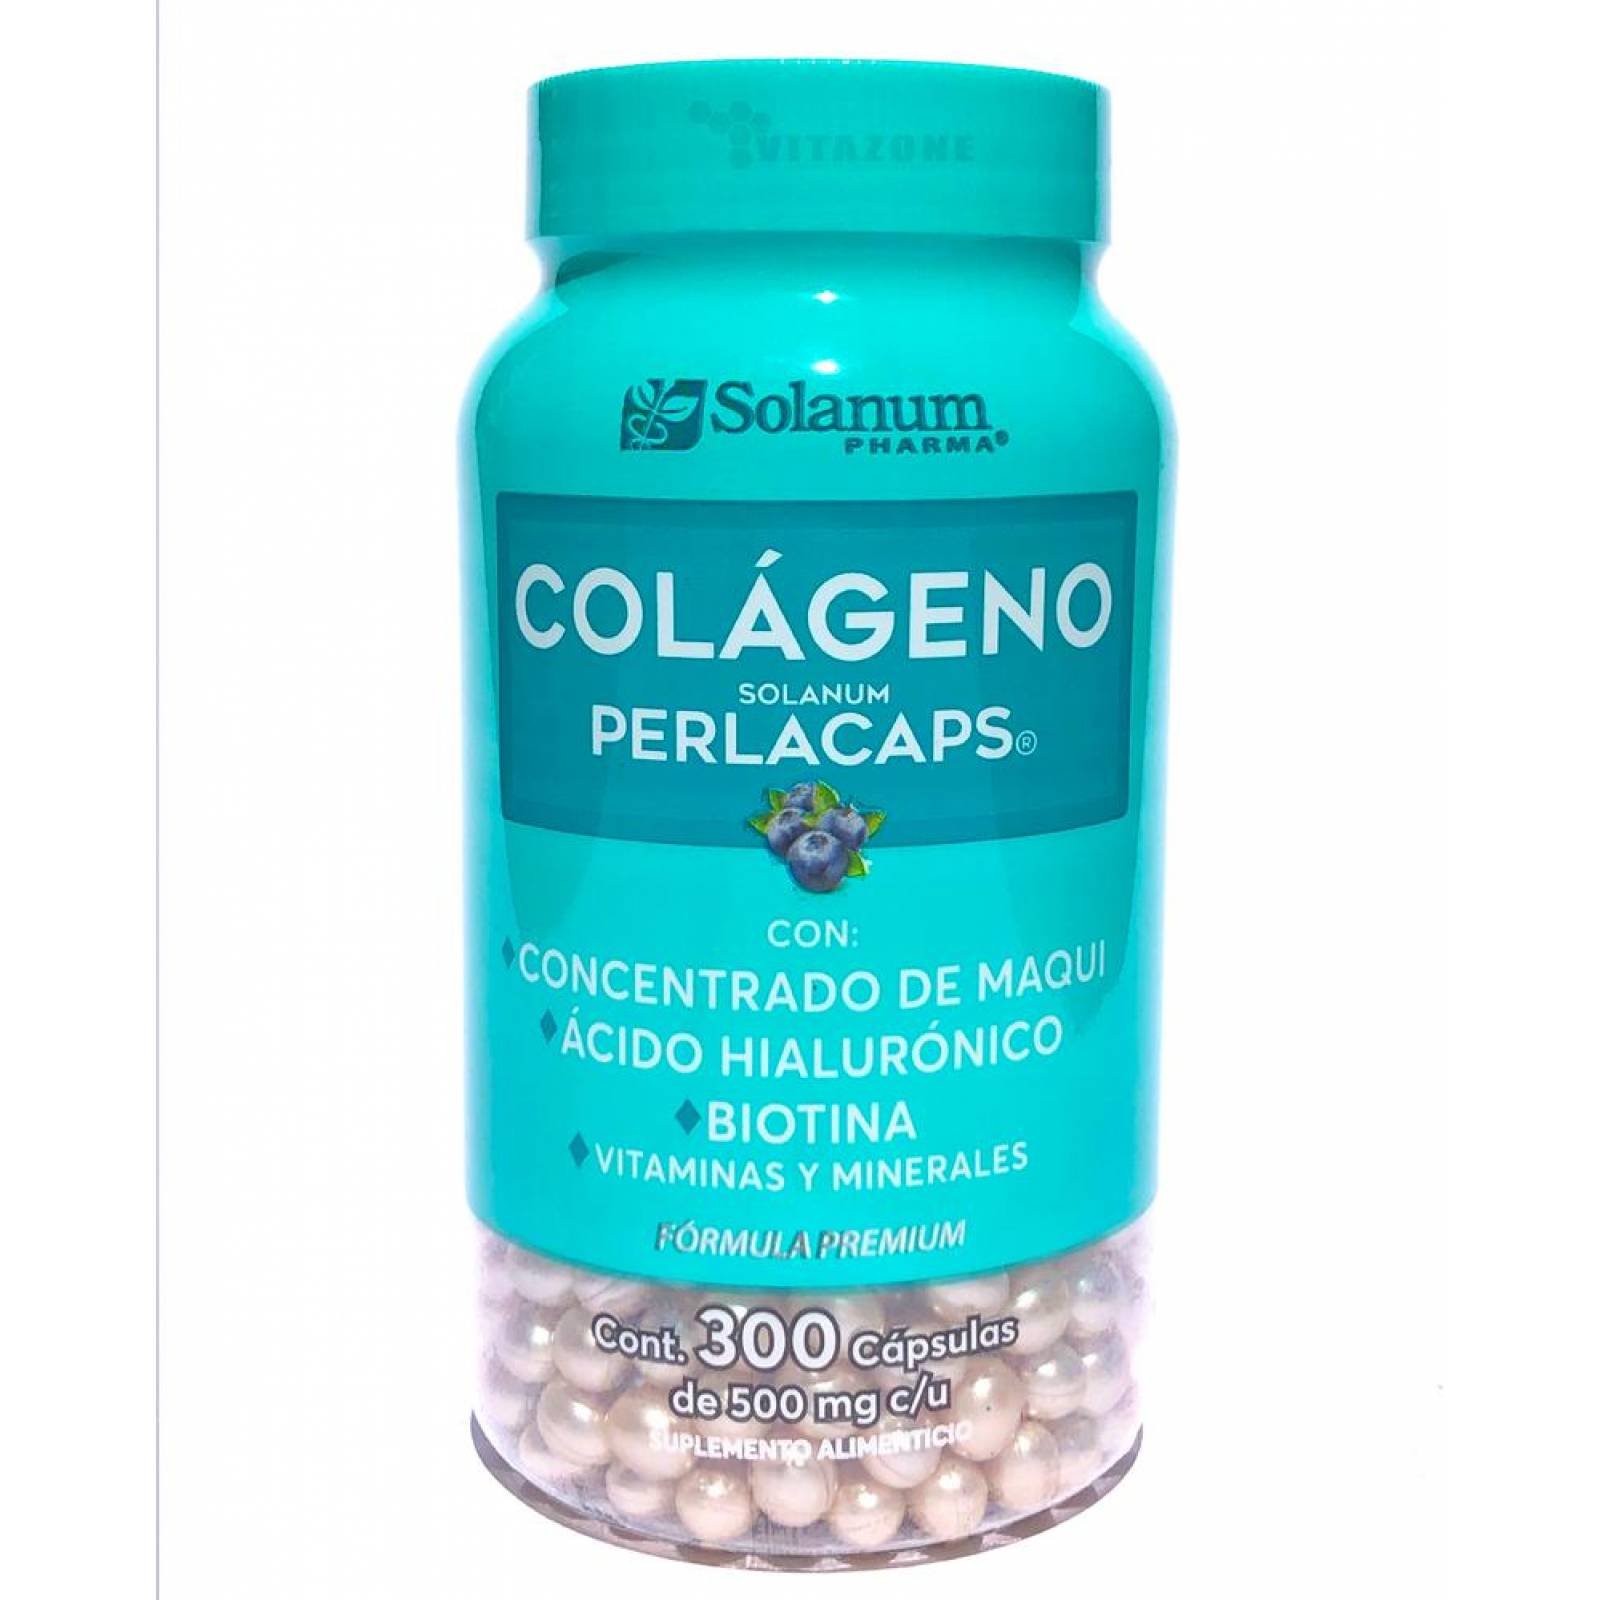 Colágeno Perlacaps Ácido Hialurónico y Biotina 300 cápsulas. 